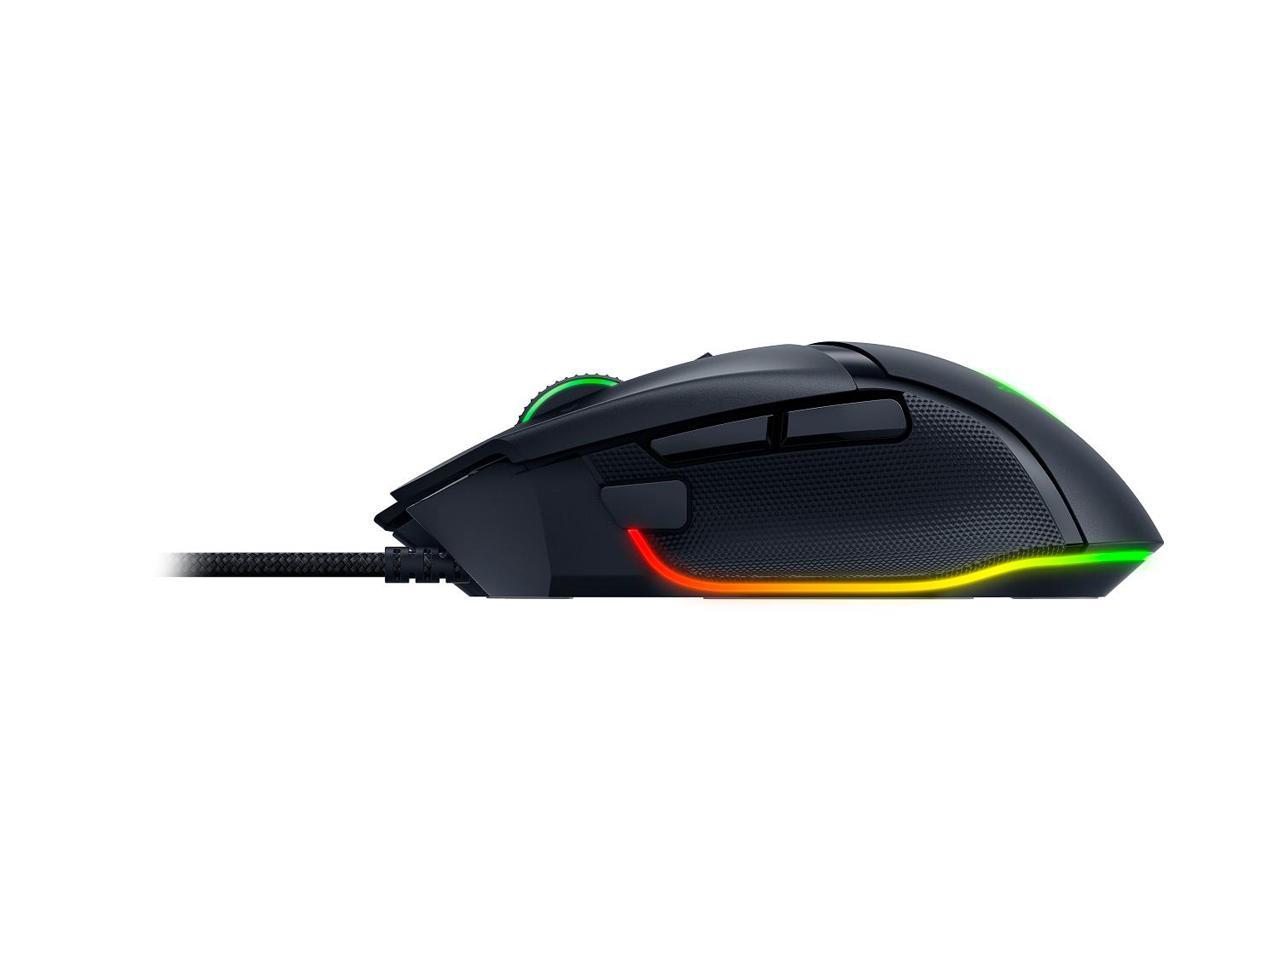 Razer Basilisk V3 Customizable Ergonomic Gaming Mouse: Fastest Gaming Mouse Switch - Chroma RGB Lighting - 26K DPI Optical Senso